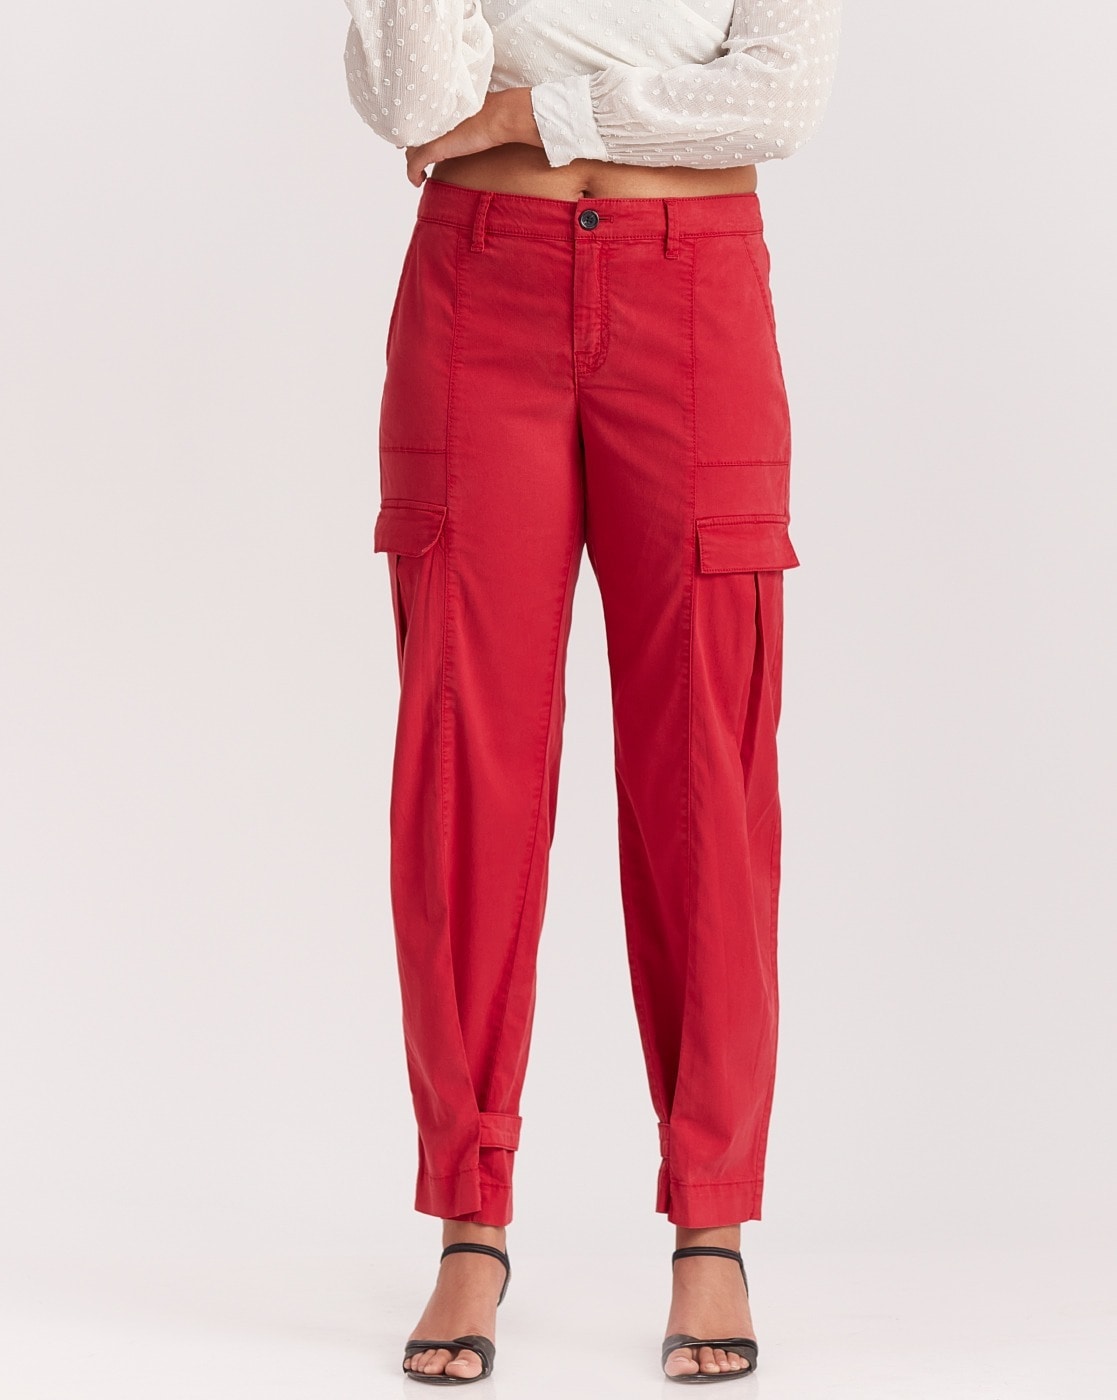 Red Stacked Cargo Pants  Iridium Clothing Co